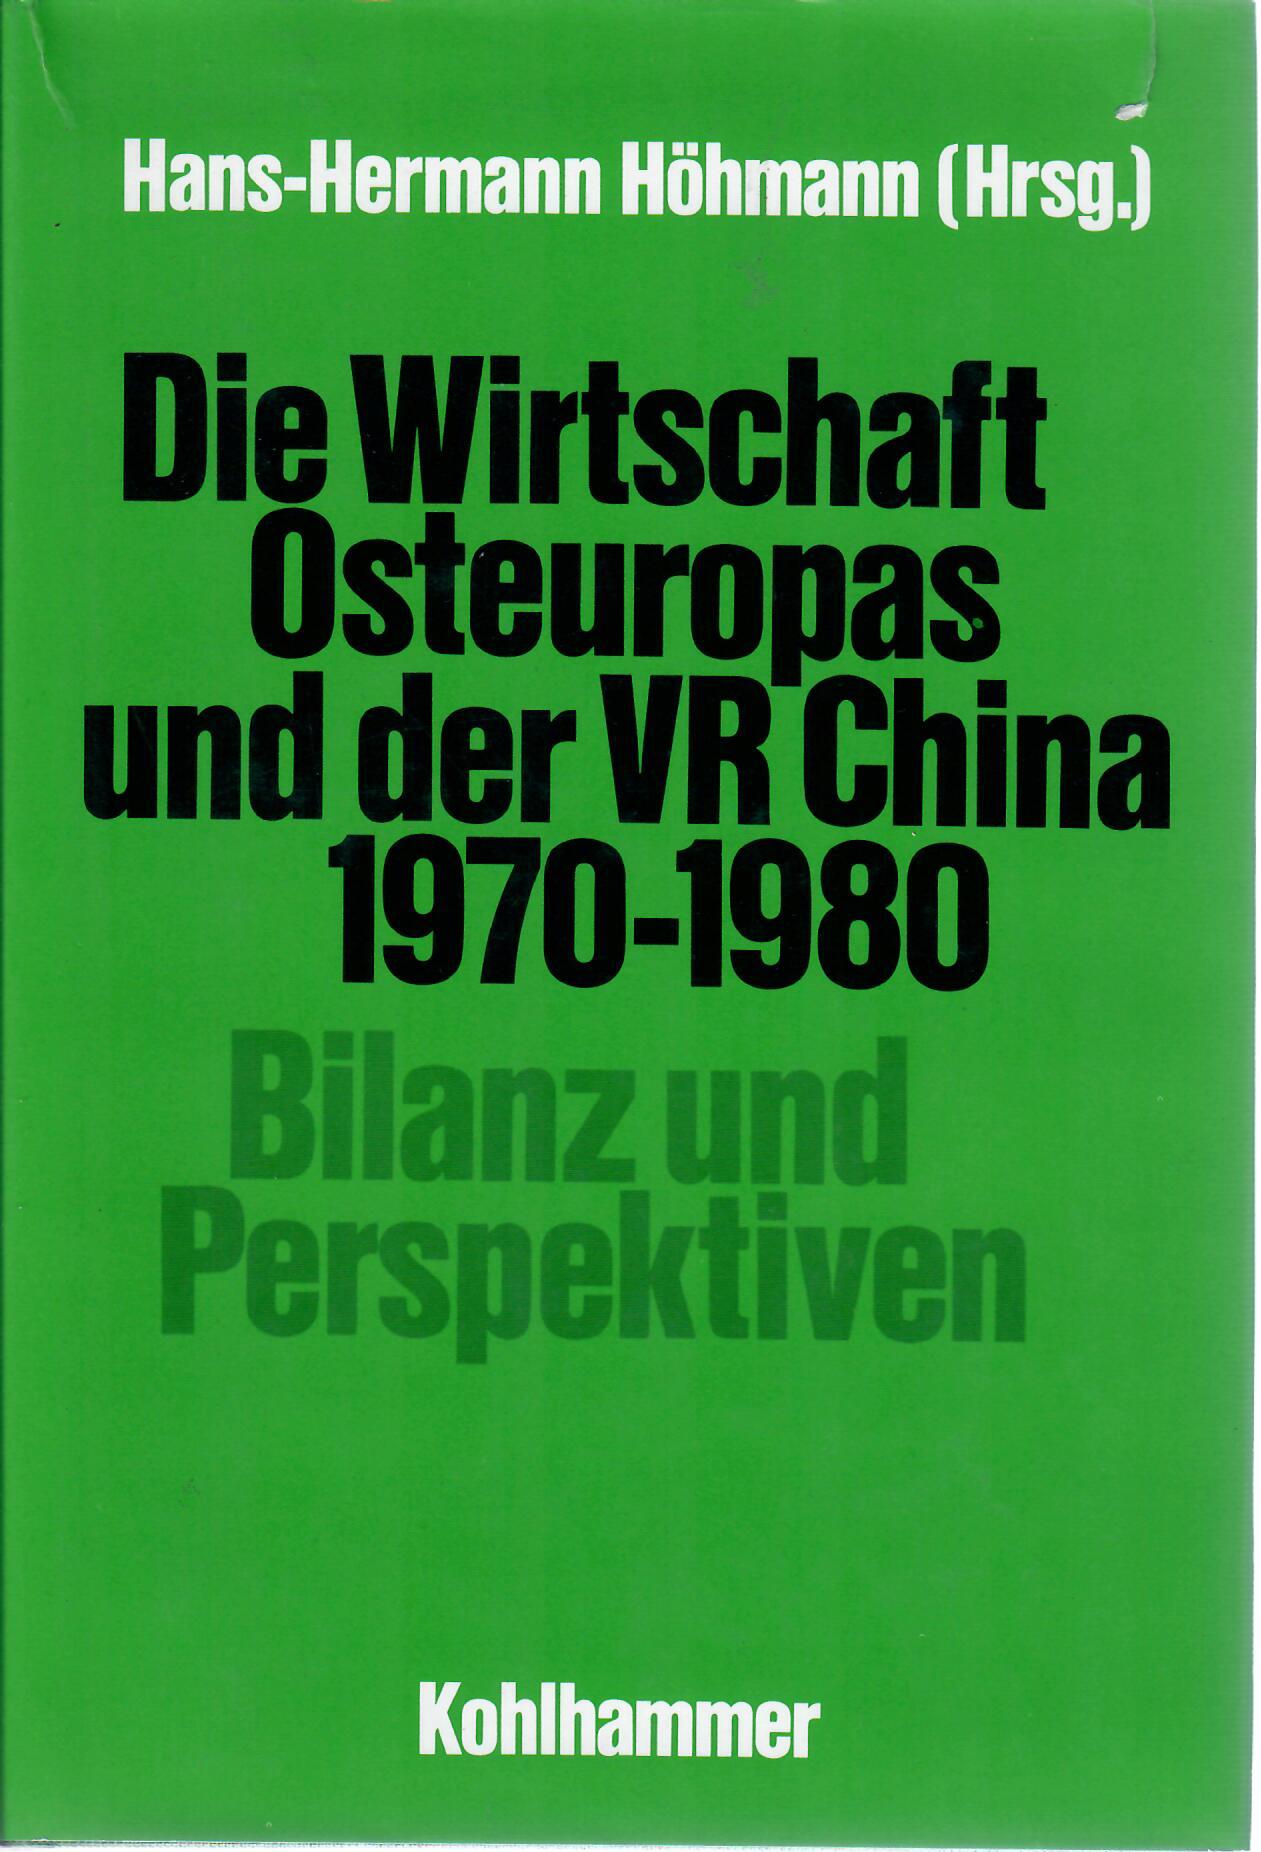 Hhmann, Hans-Hermann   : Die Wirtschaft Osteuropas und der VR China 1970 - 1980. Bilanz und Perspektiven